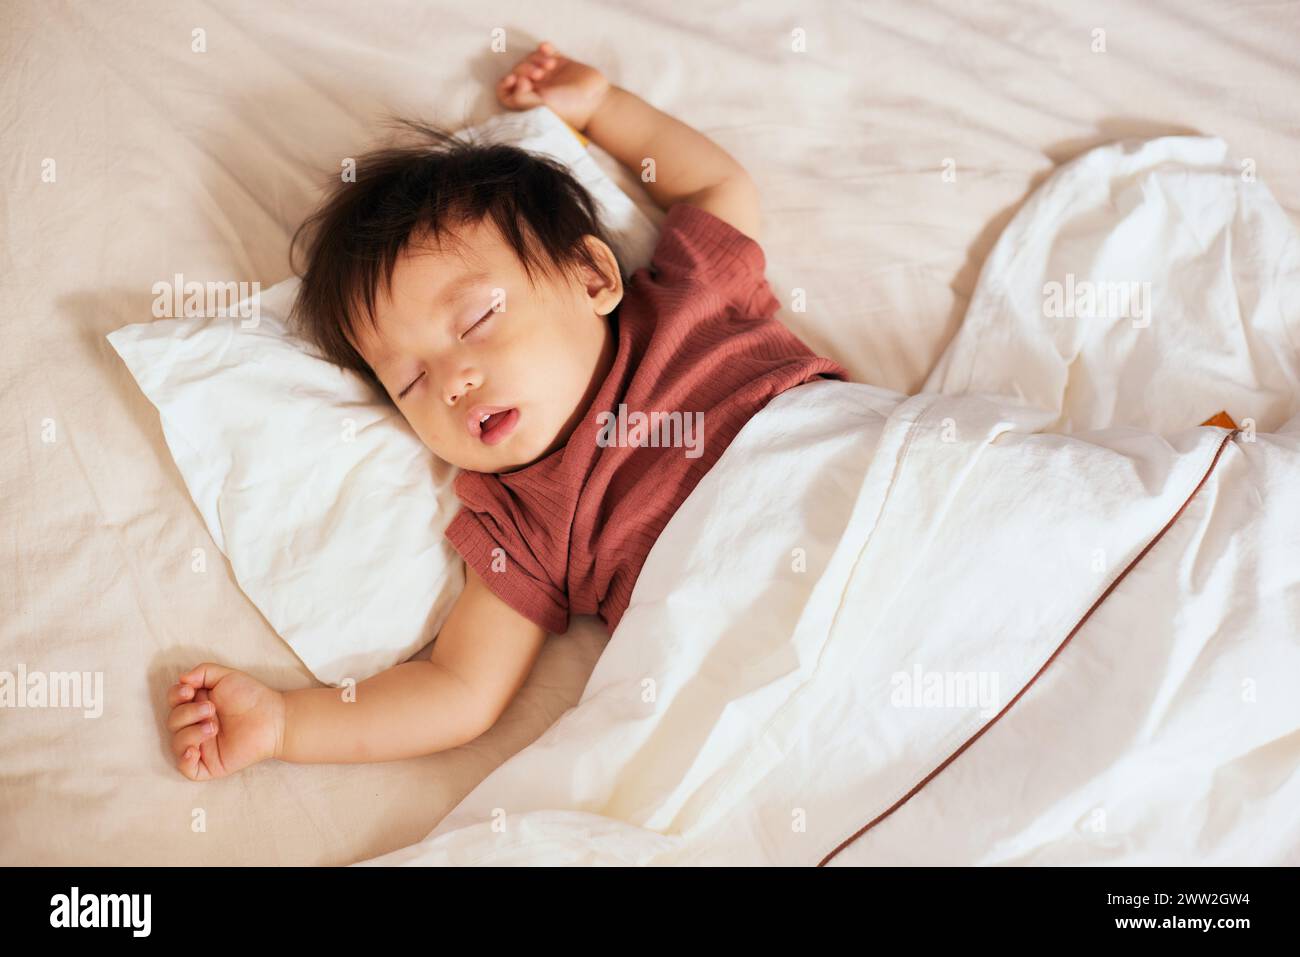 Bébé asiatique dormant au lit Banque D'Images